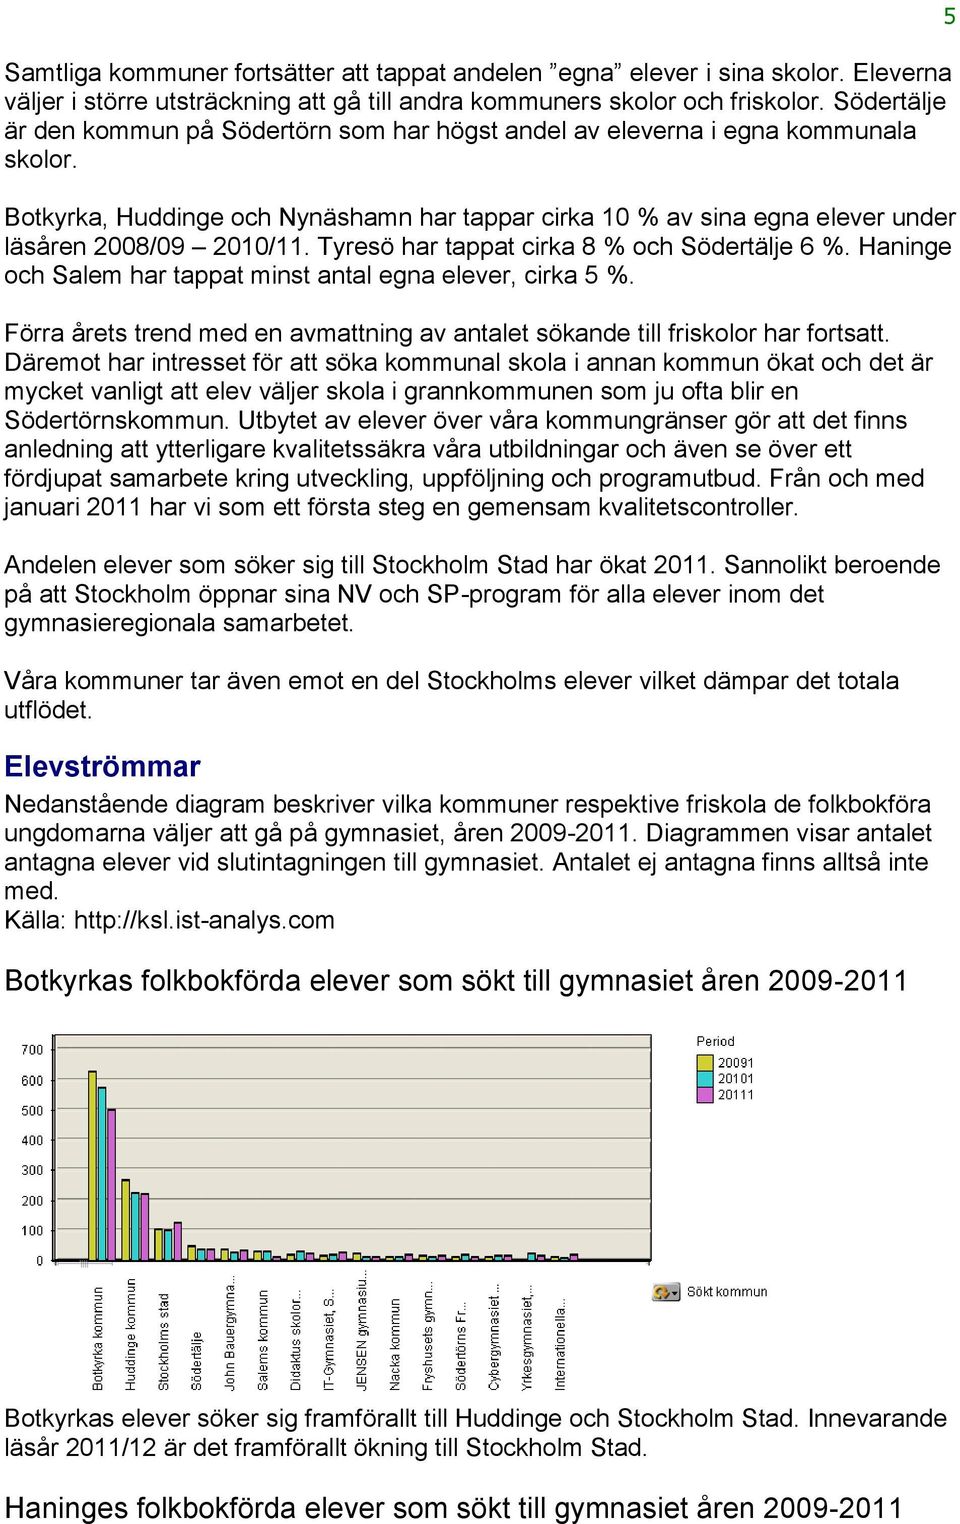 Tyresö har tappat cirka 8 % och Södertälje 6 %. Haninge och Salem har tappat minst antal egna elever, cirka 5 %. Förra årets trend med en avmattning av antalet sökande till friskolor har fortsatt.